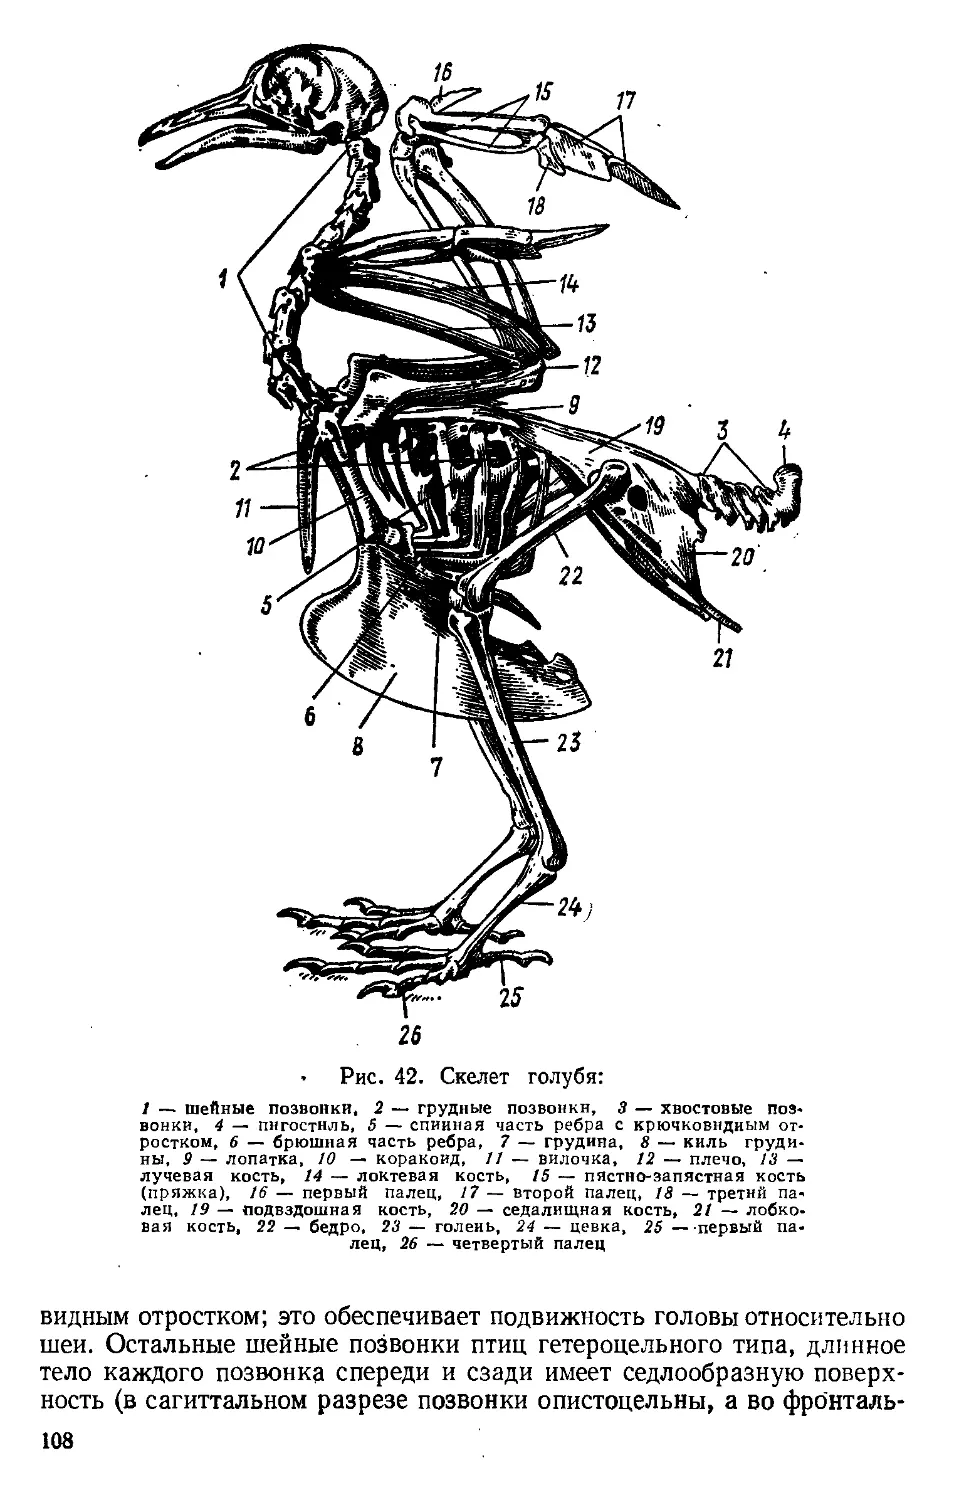 Скелет передней конечности птиц состоит из. Скелет сизого голубя биология. Скелет туловища сизого голубя. Скелет поясов конечностей птиц. Скелет туловища птицы сбоку.